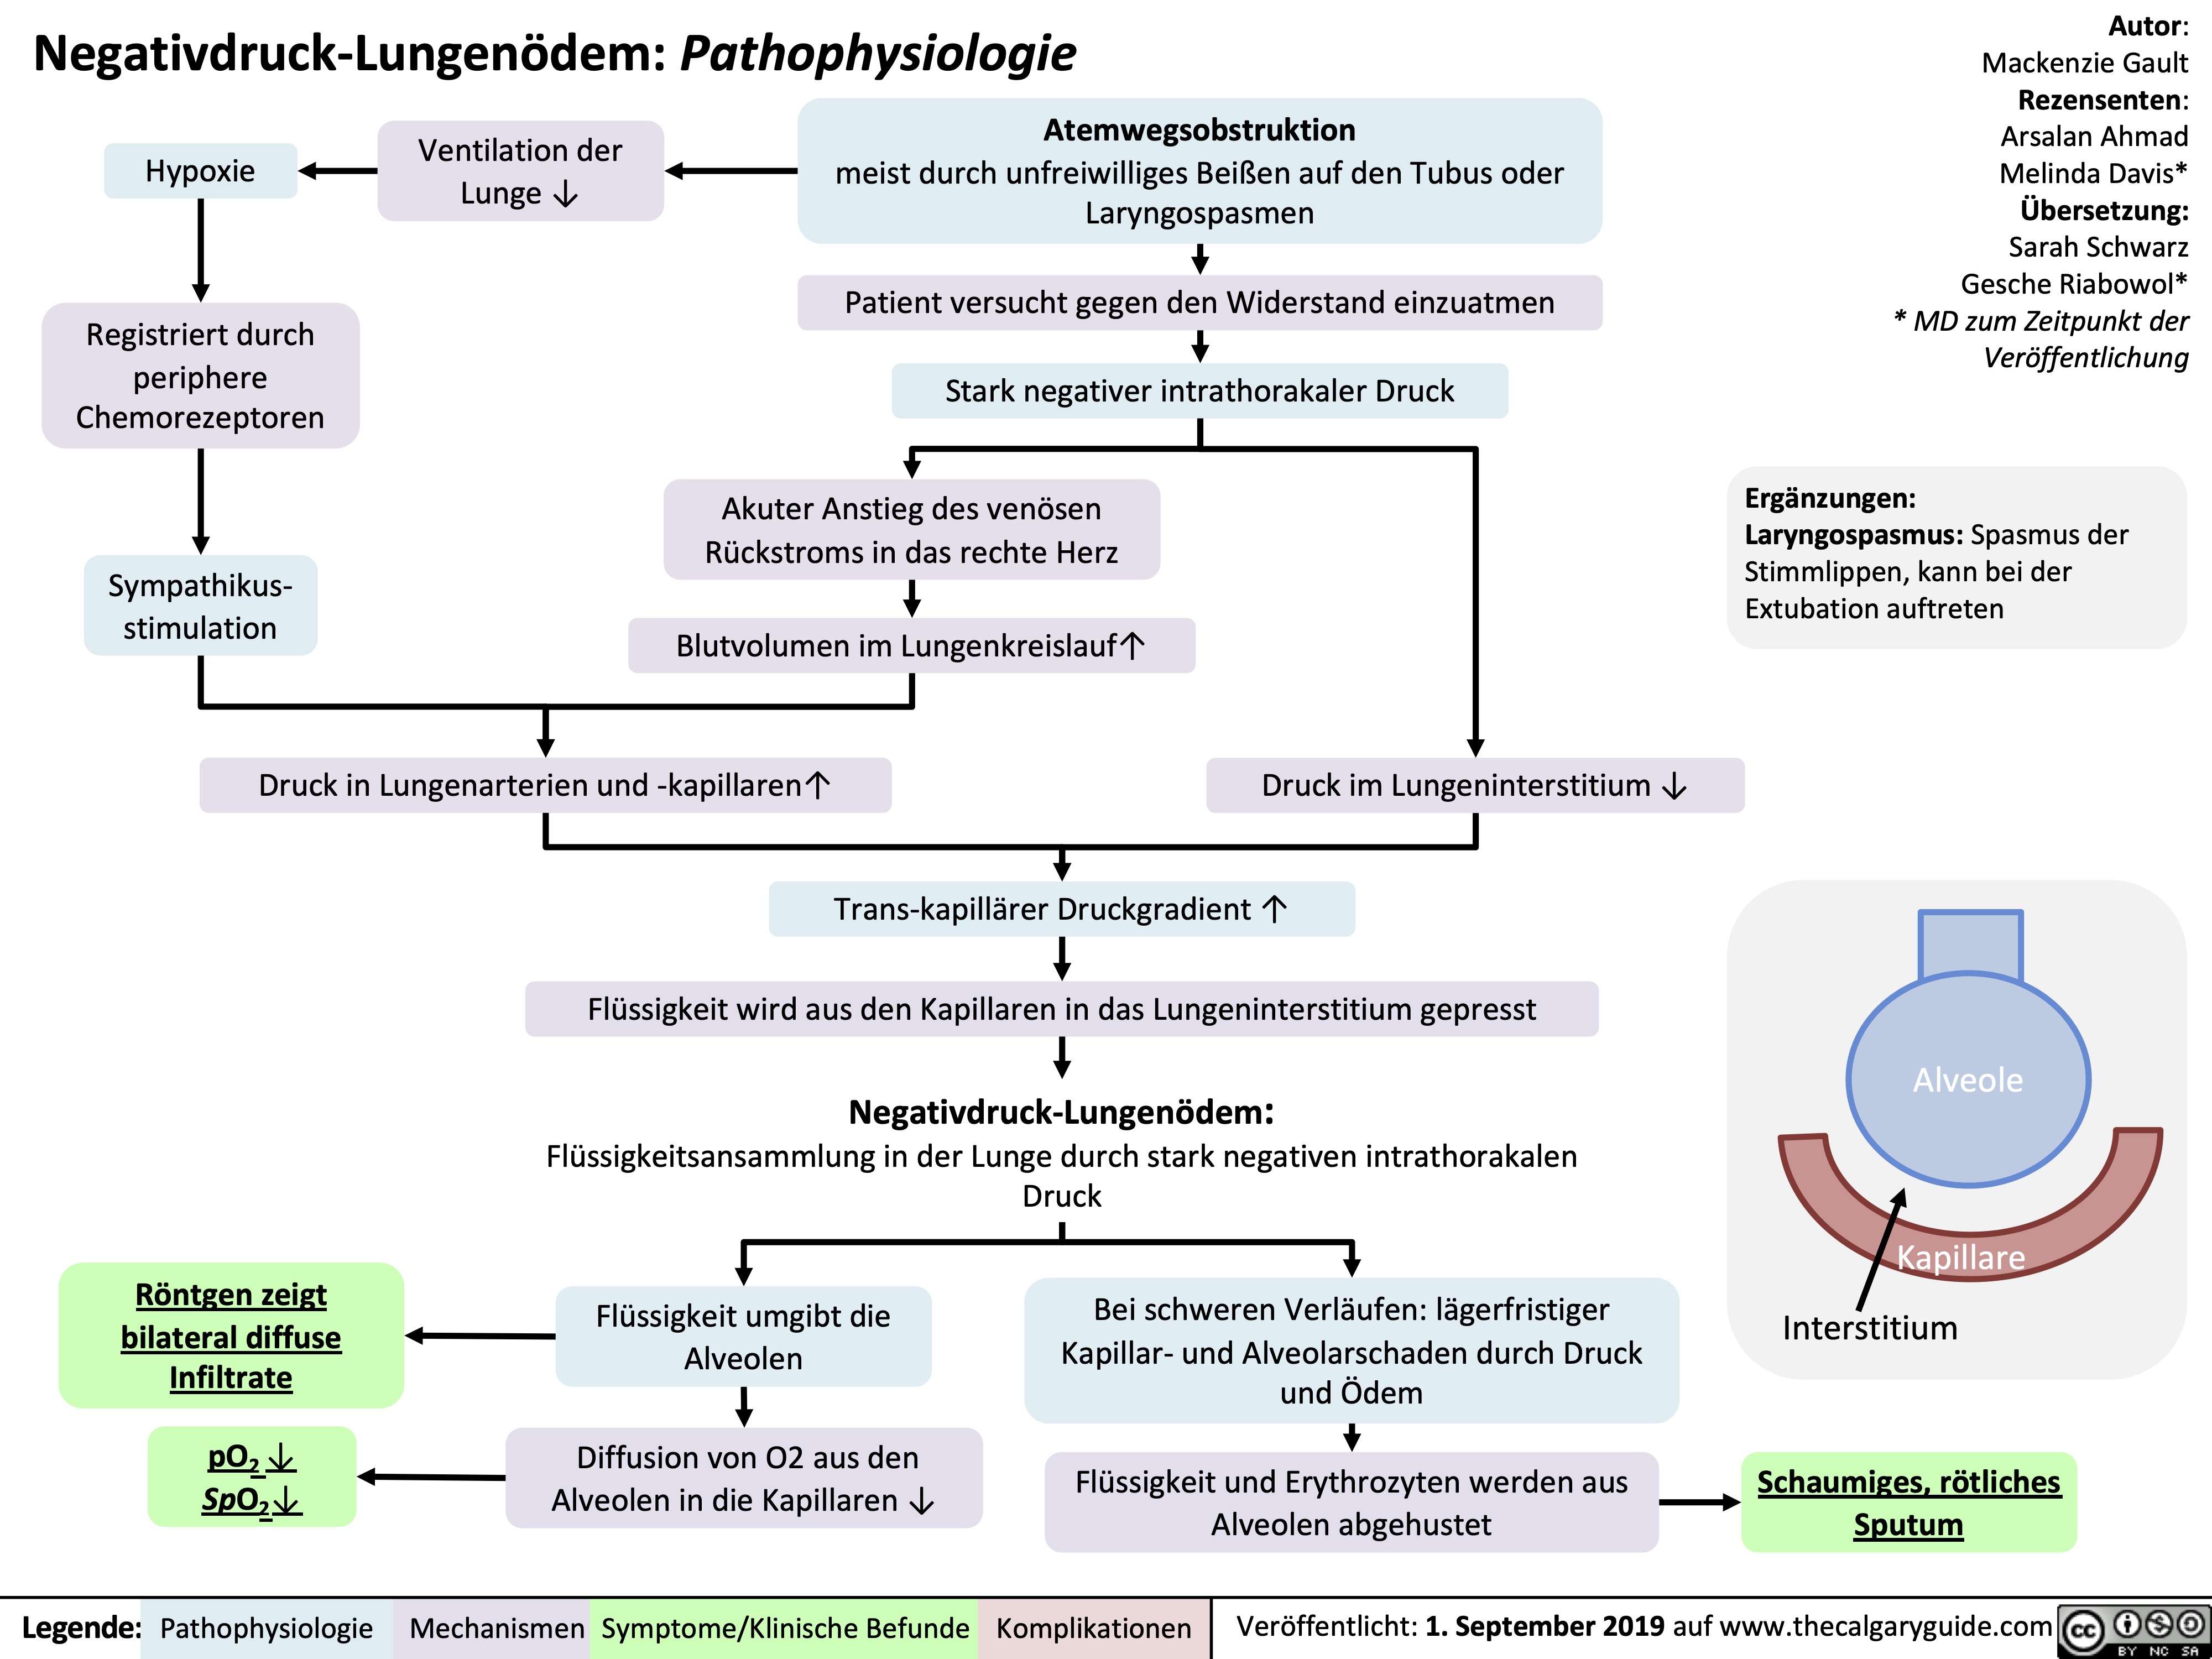 Negativdruck-Lungenödem: Pathophysiologie